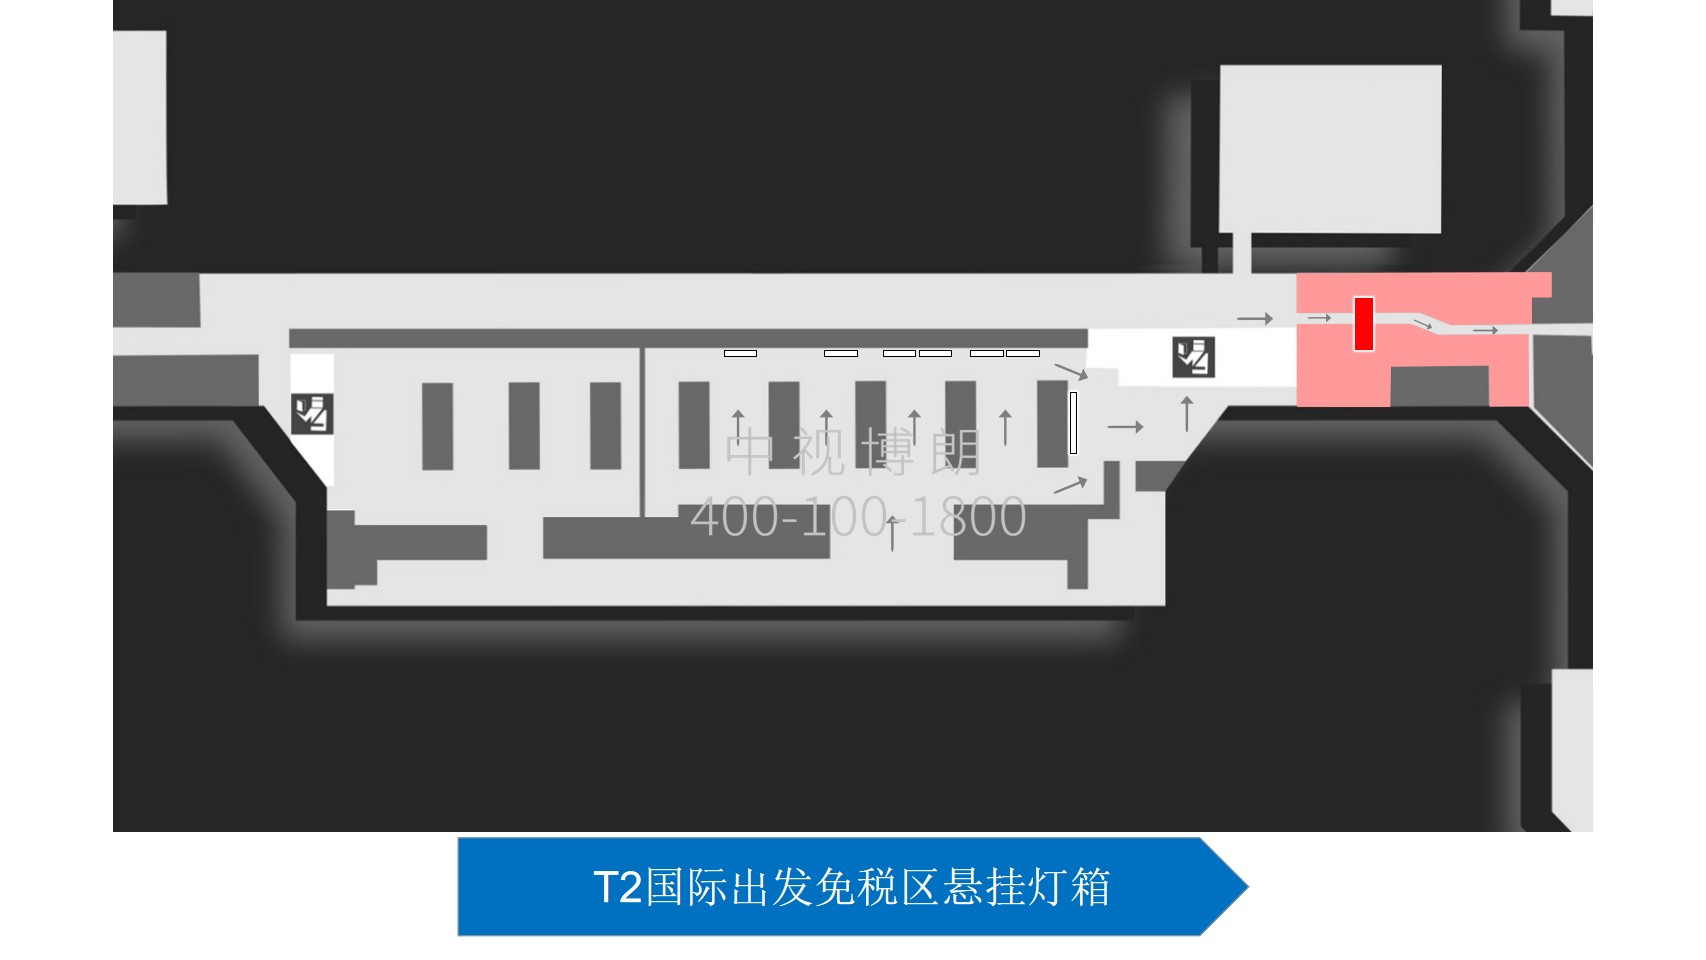 北京首都机场广告-T2国际出发免税区悬挂灯箱位置图